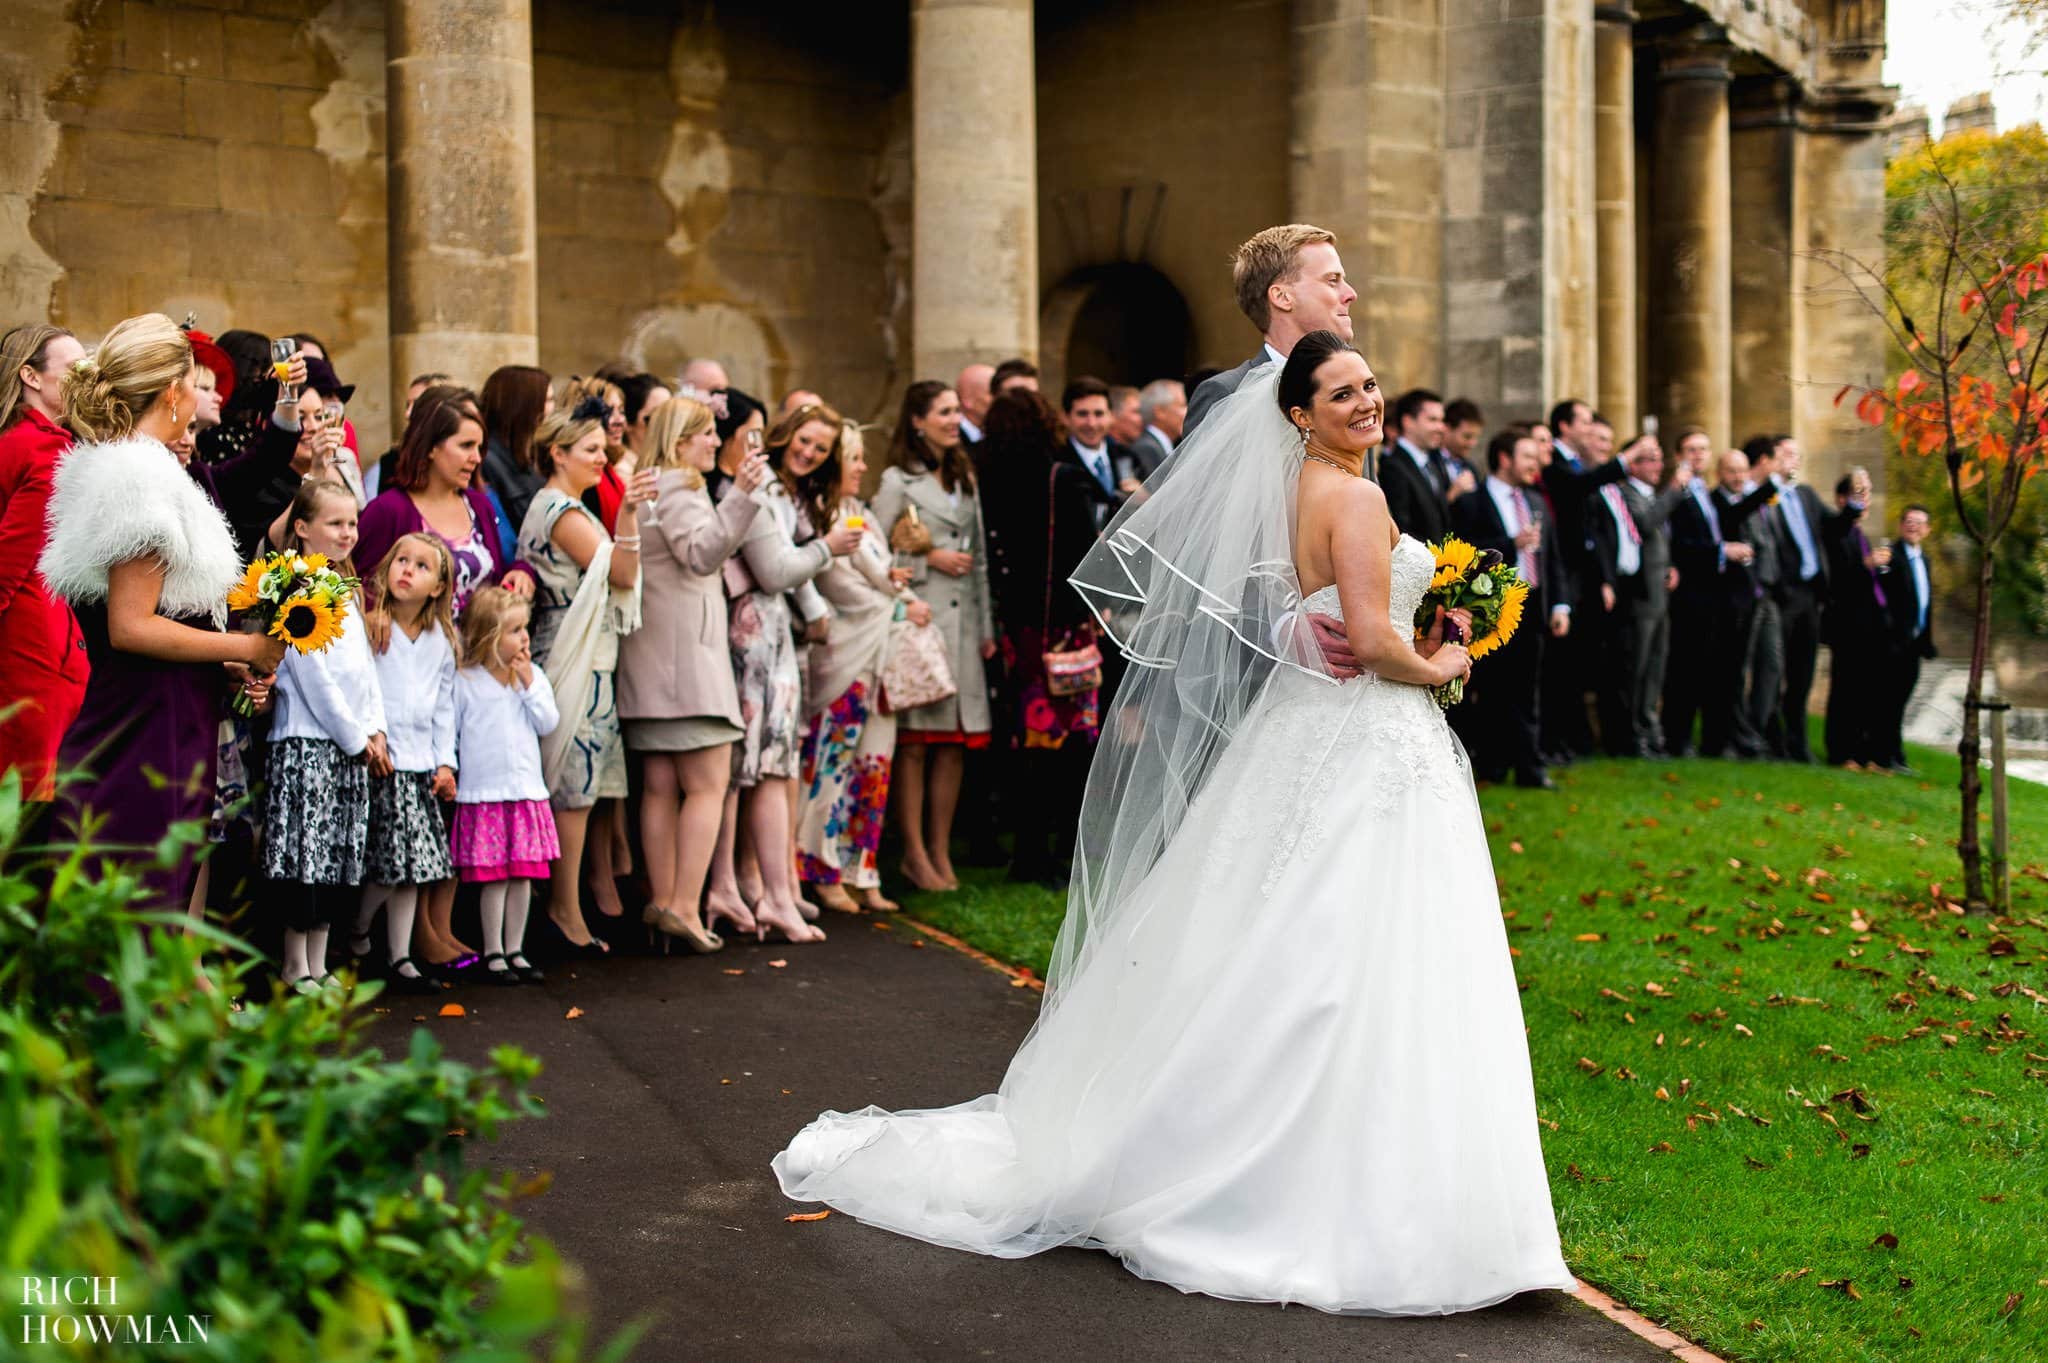 Wedding at Bath Abbey | Bath Guildhall Wedding Reception 24